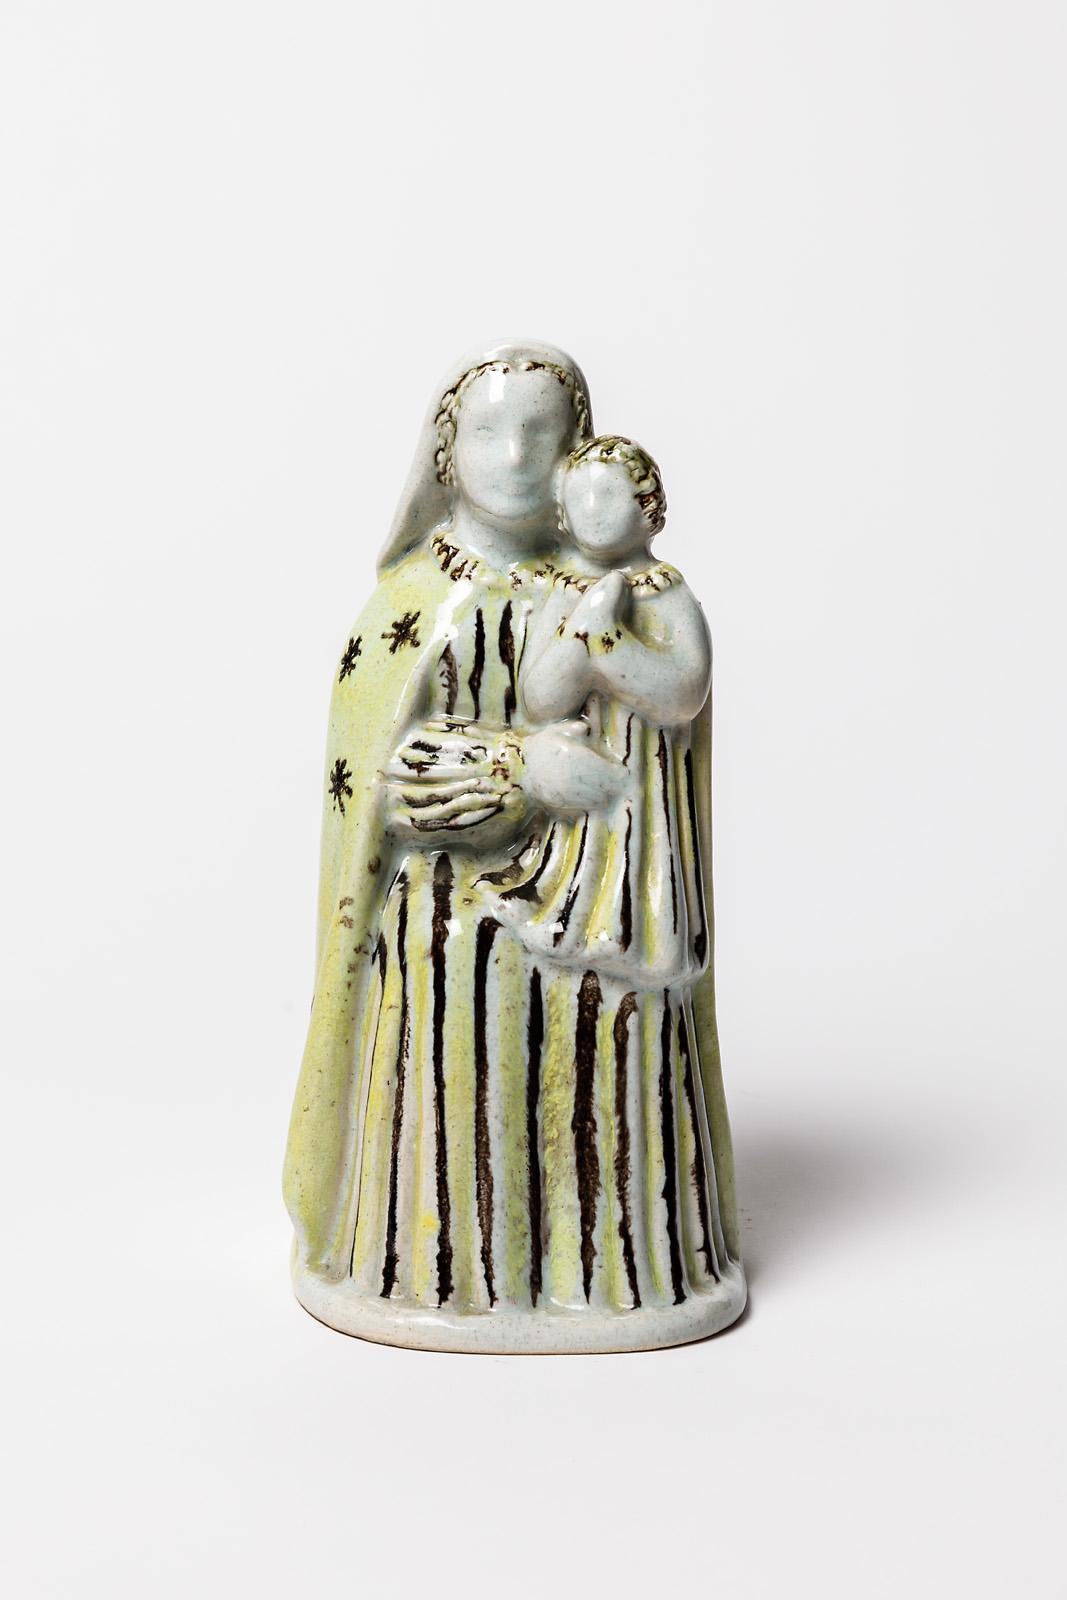 Paul Pouchol zugeschrieben

Art deco Keramikskulptur Frau und Kind

Signiert unter dem Sockel

Weiße, gelbe und schwarze Keramikglasurfarben

Original perfekter Zustand

Höhe 21 cm
Groß 11 cm.